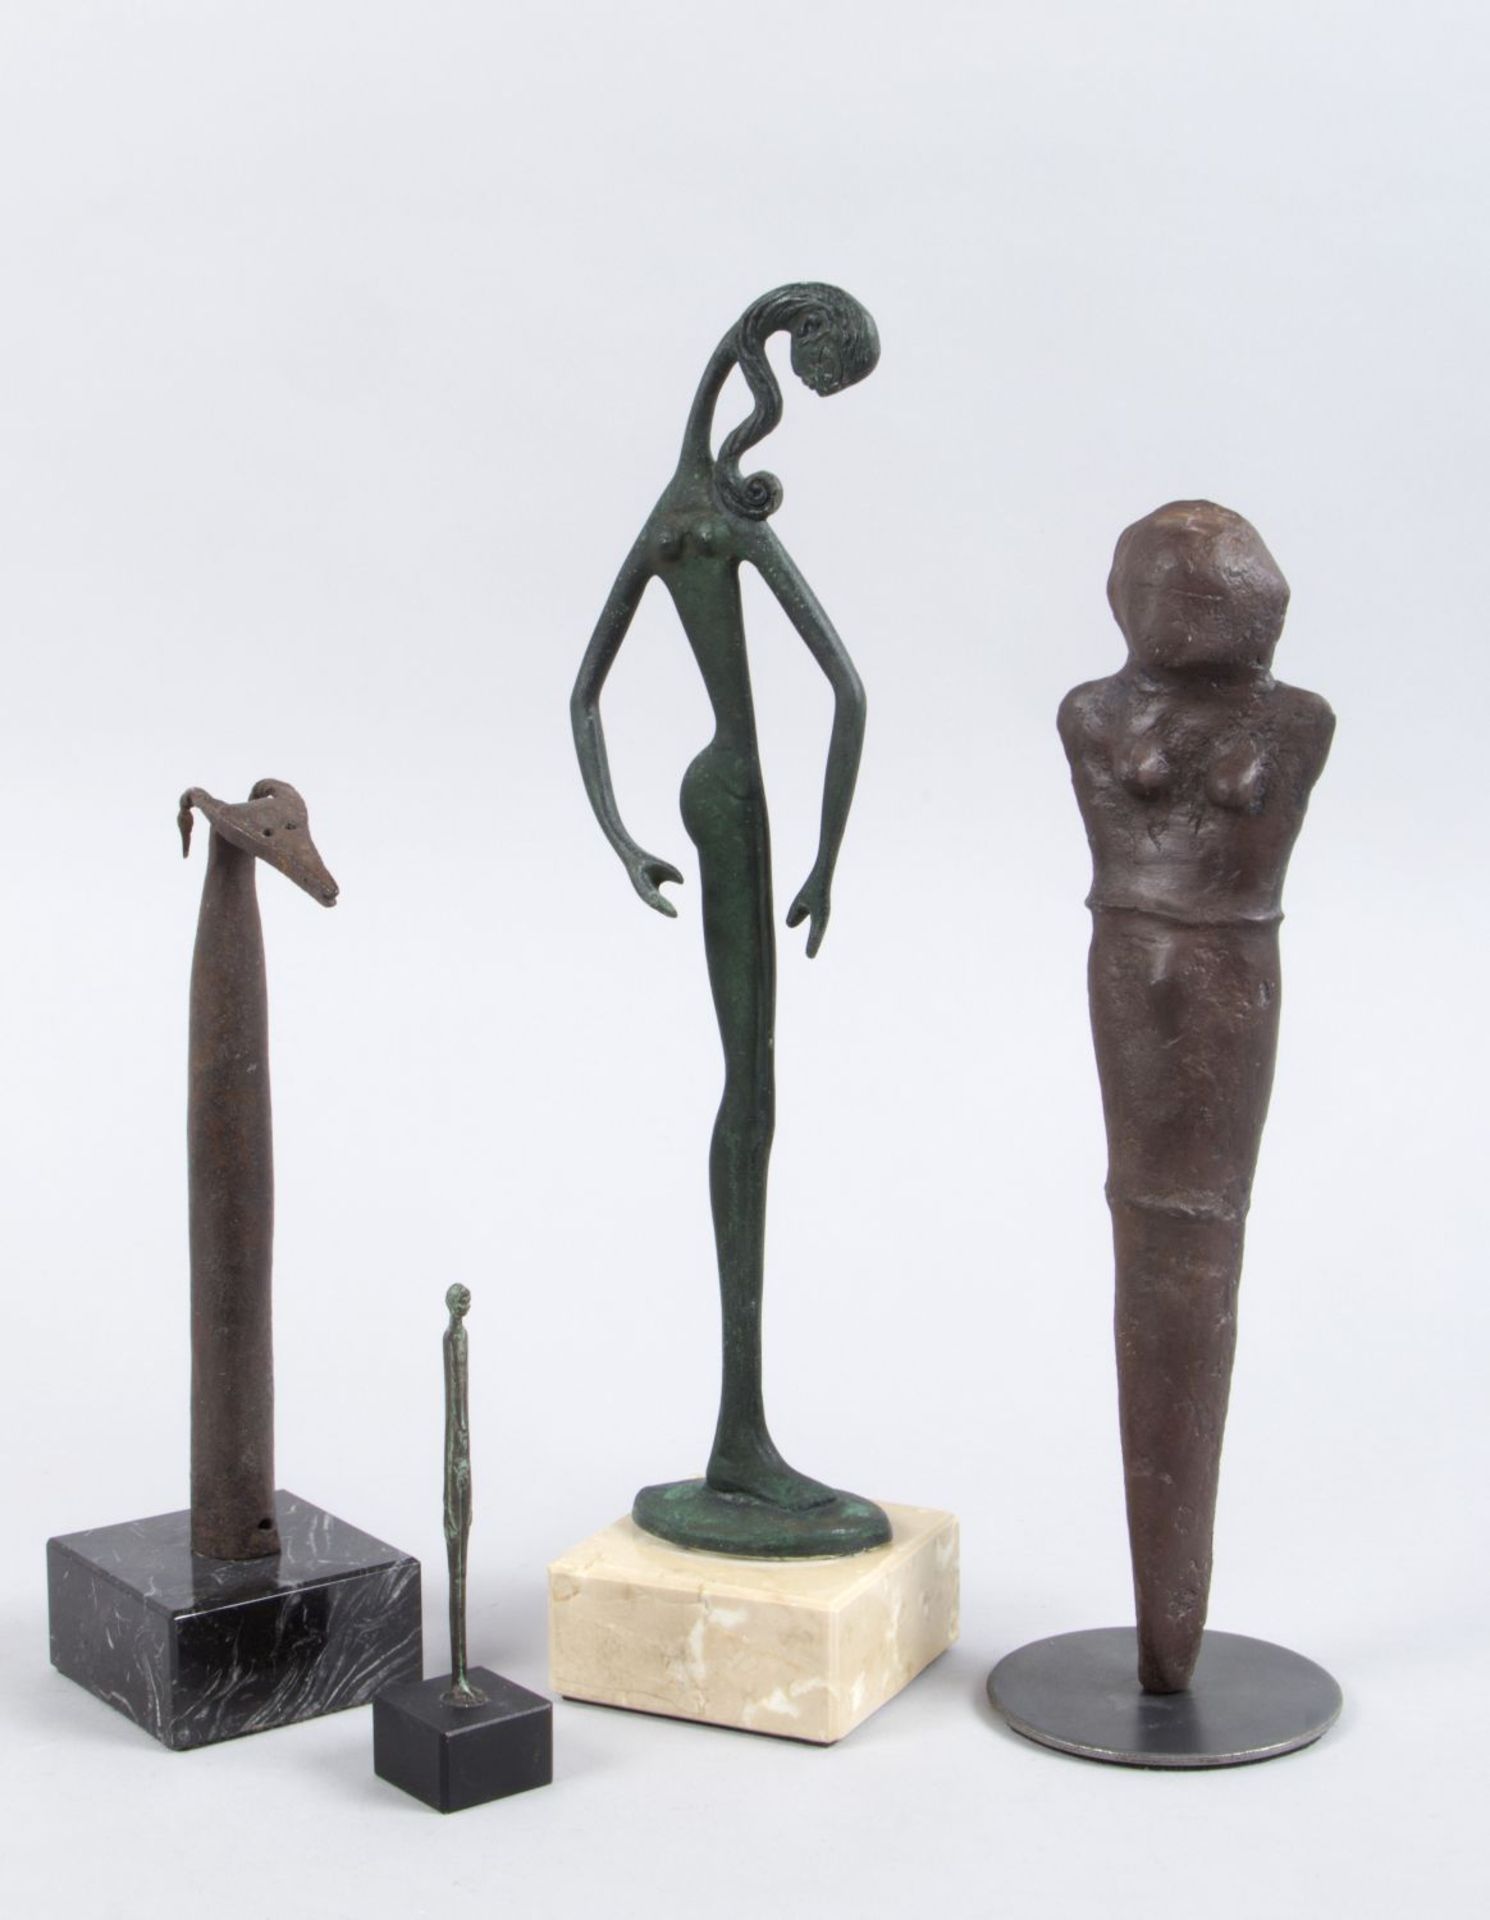 Unbekannt, 20. Jh. Abstrahierte Männer und Frauenfiguren. Abstrahierte Ziege. 4 Skulpturen aus versc